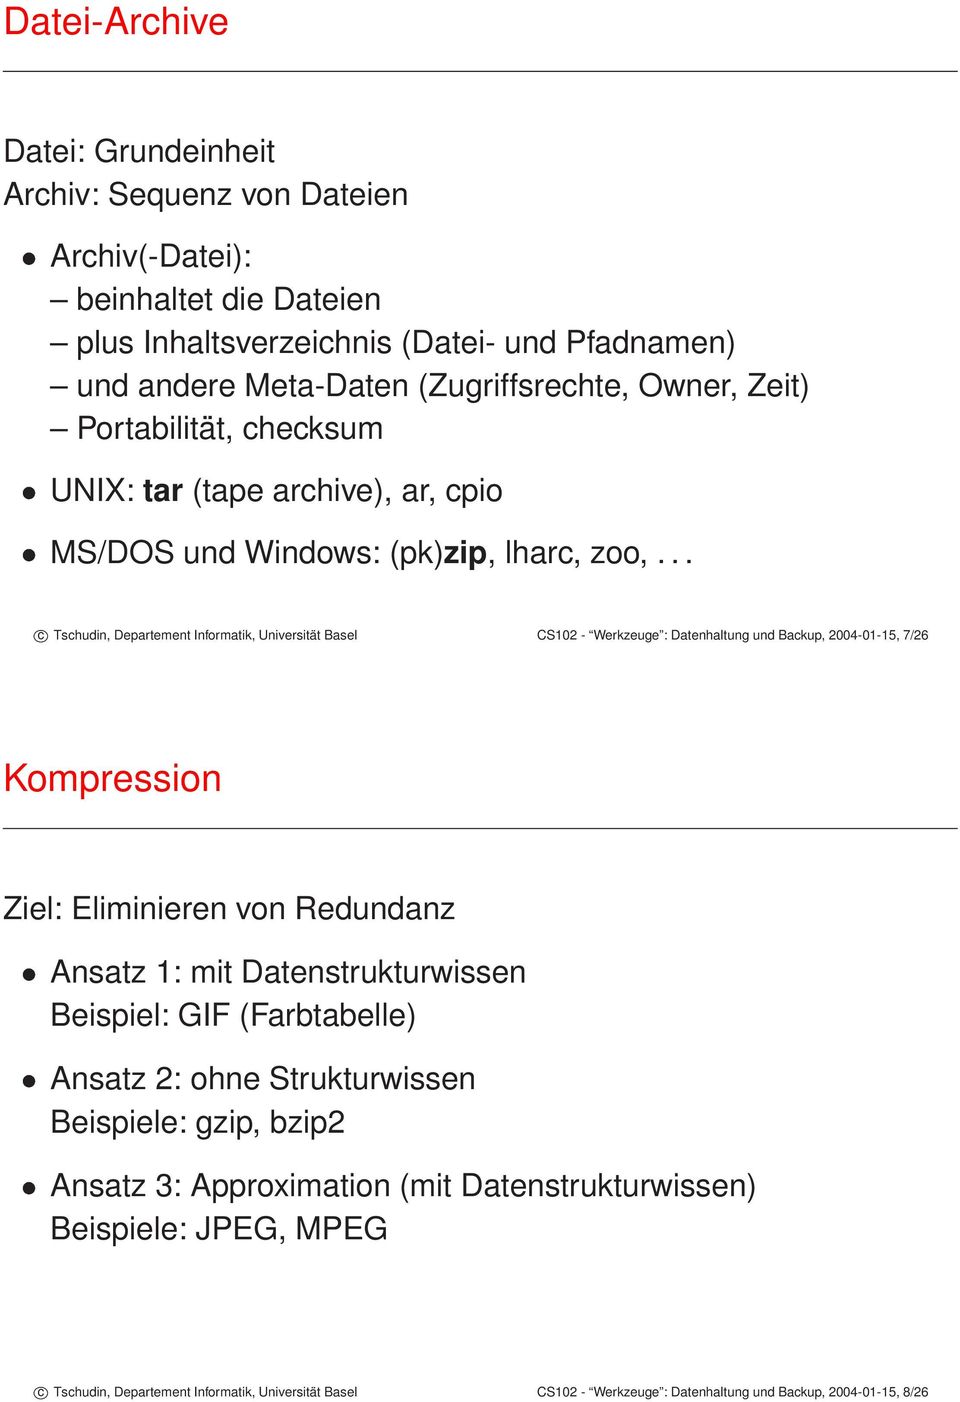 .. c Tschudin, Departement Informatik, Universität Basel CS102 - Werkzeuge : Datenhaltung und Backup, 2004-01-15, 7/26 Kompression Ziel: Eliminieren von Redundanz Ansatz 1: mit